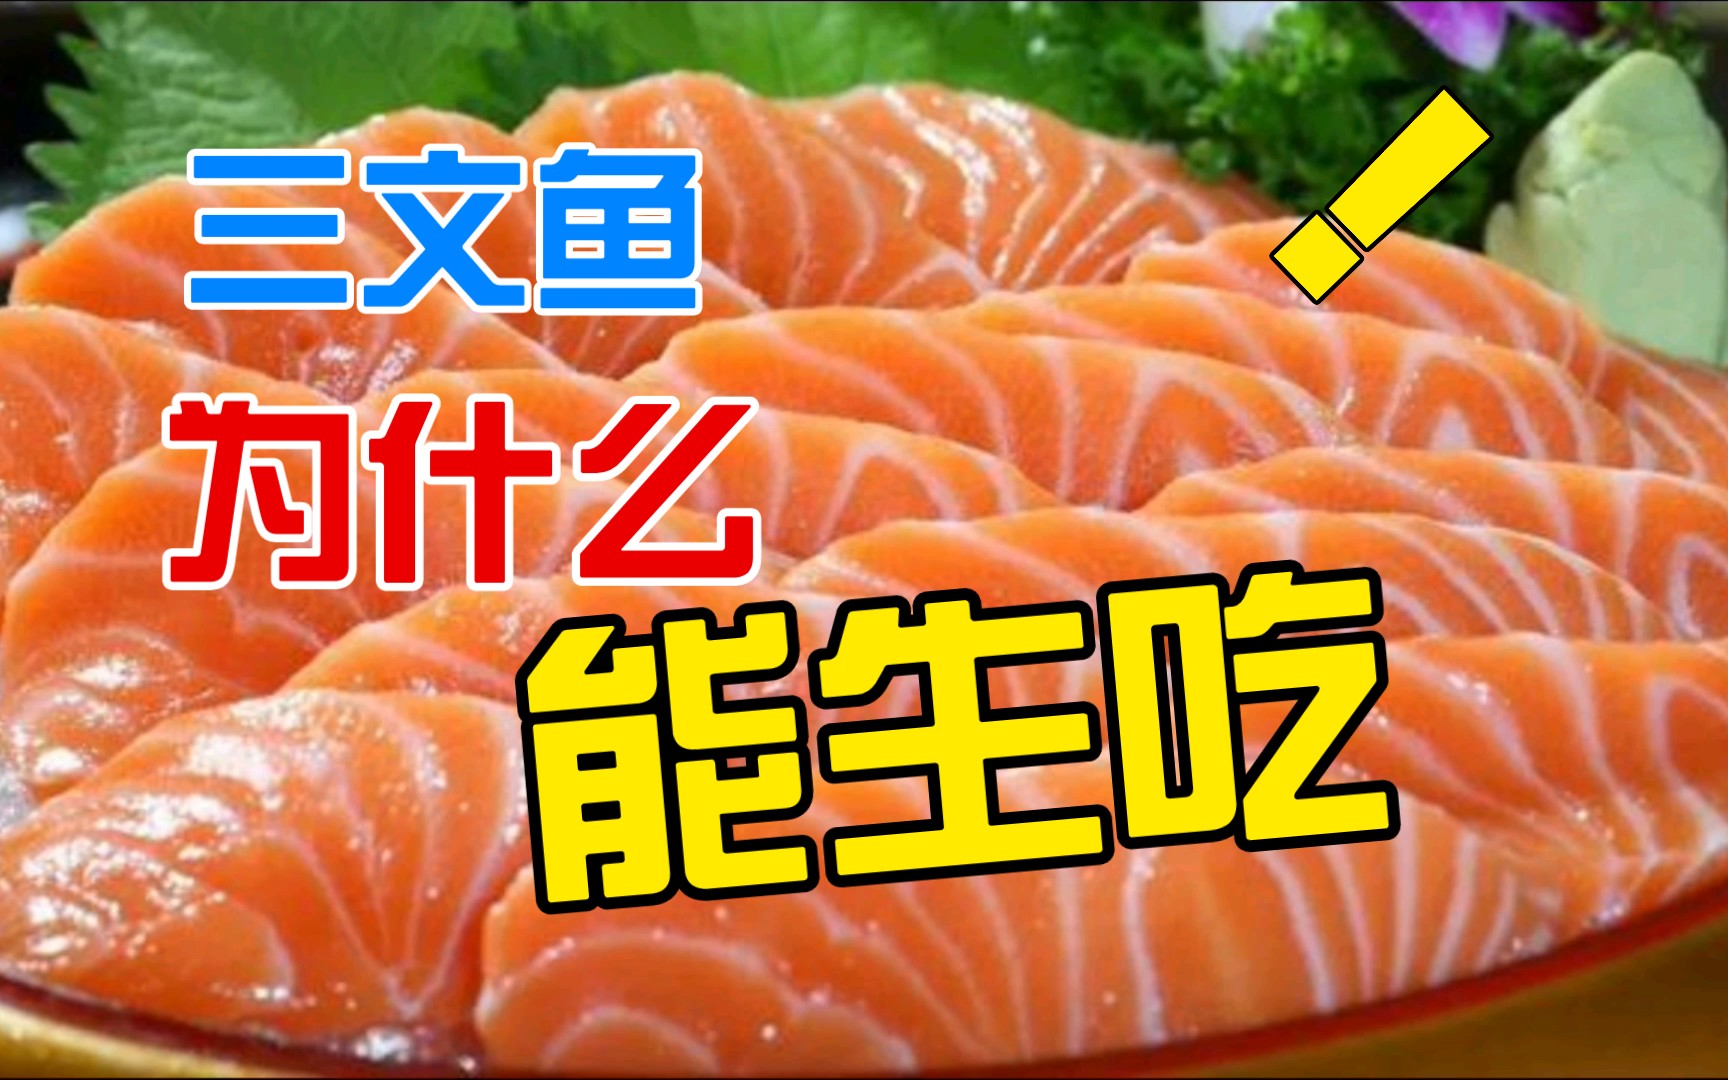 【生活科普】三文鱼为什么能生吃